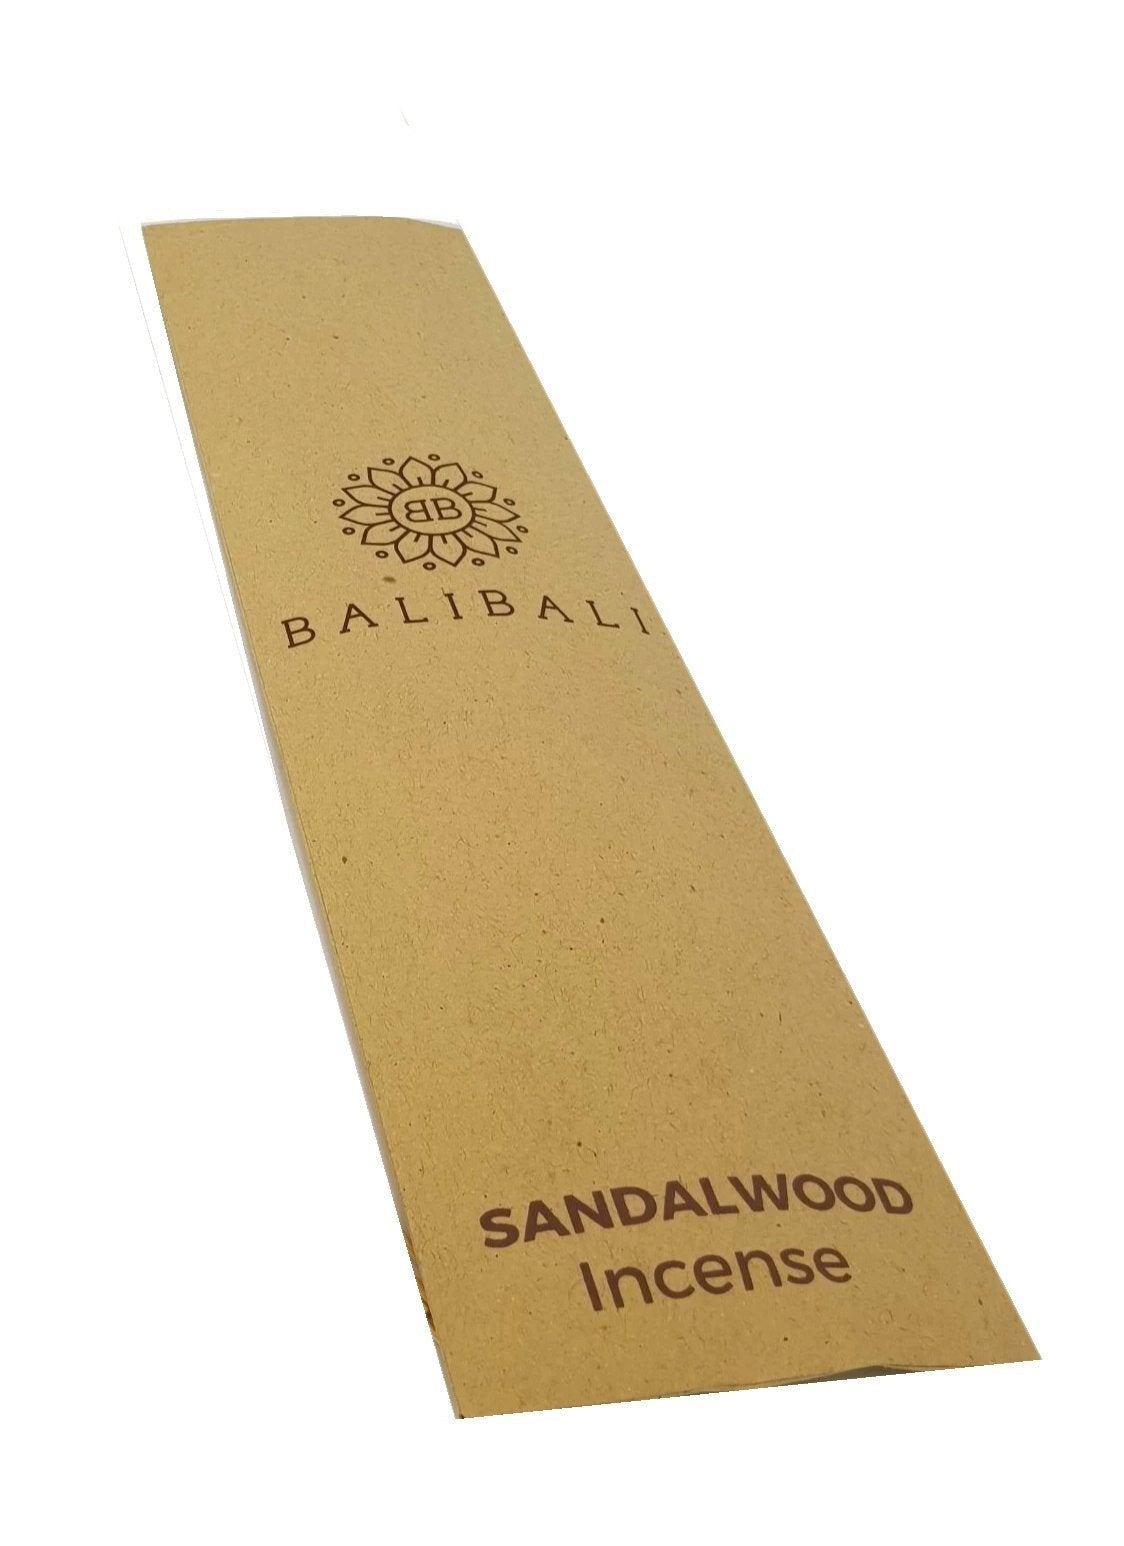 BaliBali incense, natural, hand made - various fragrances